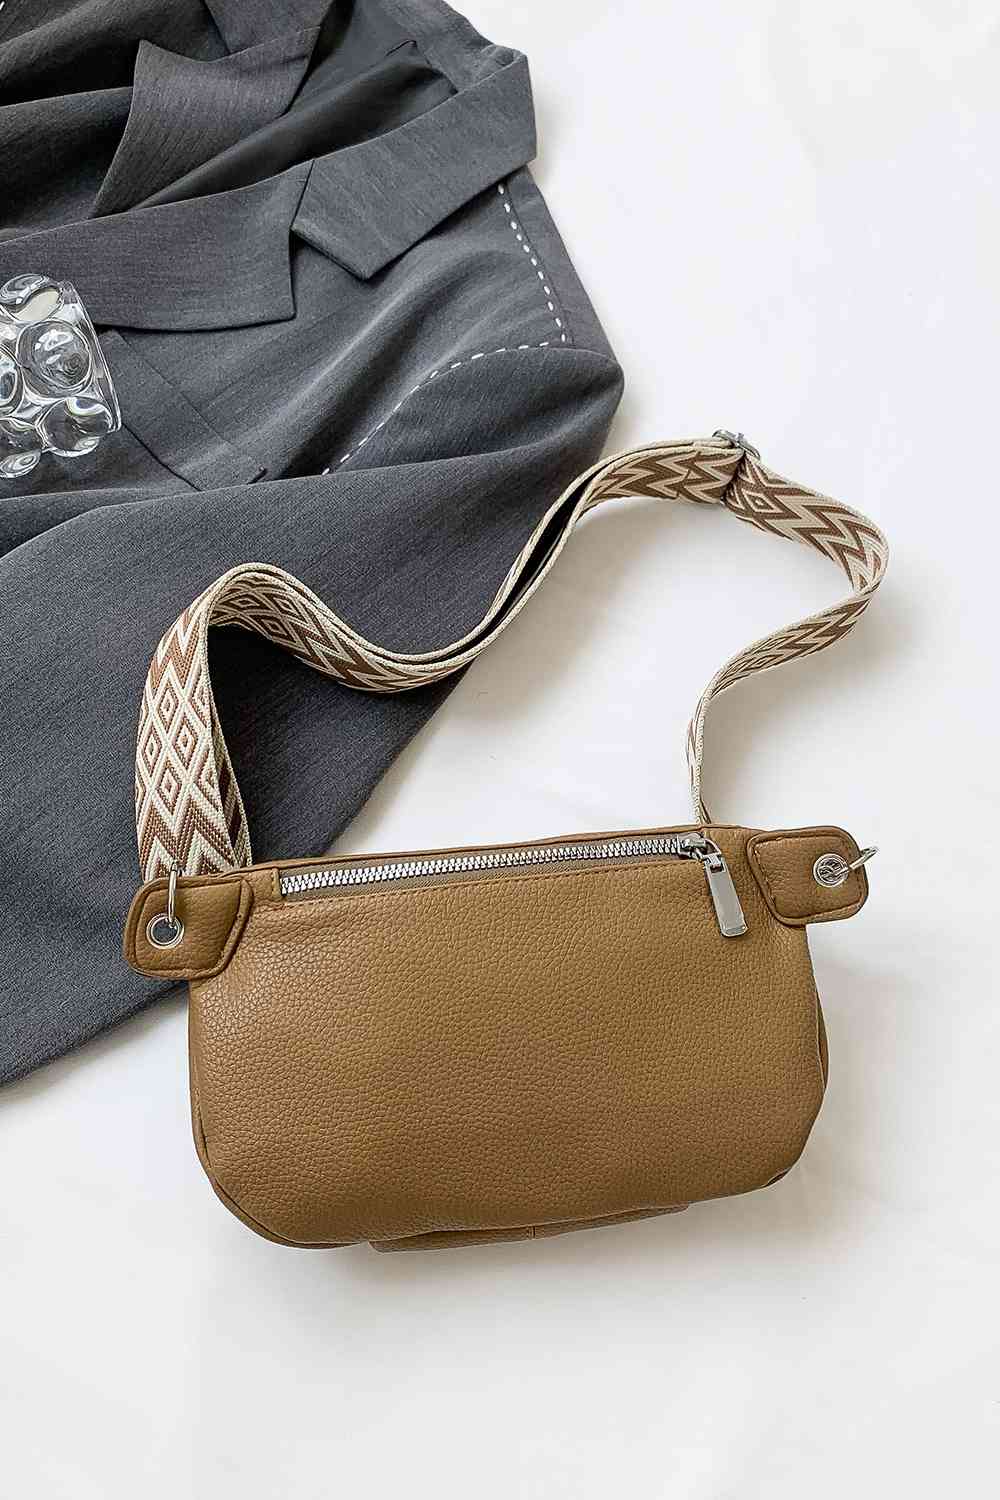 TEEK - Chain Zipper PU Leather Sling Bag BAG TEEK Trend   